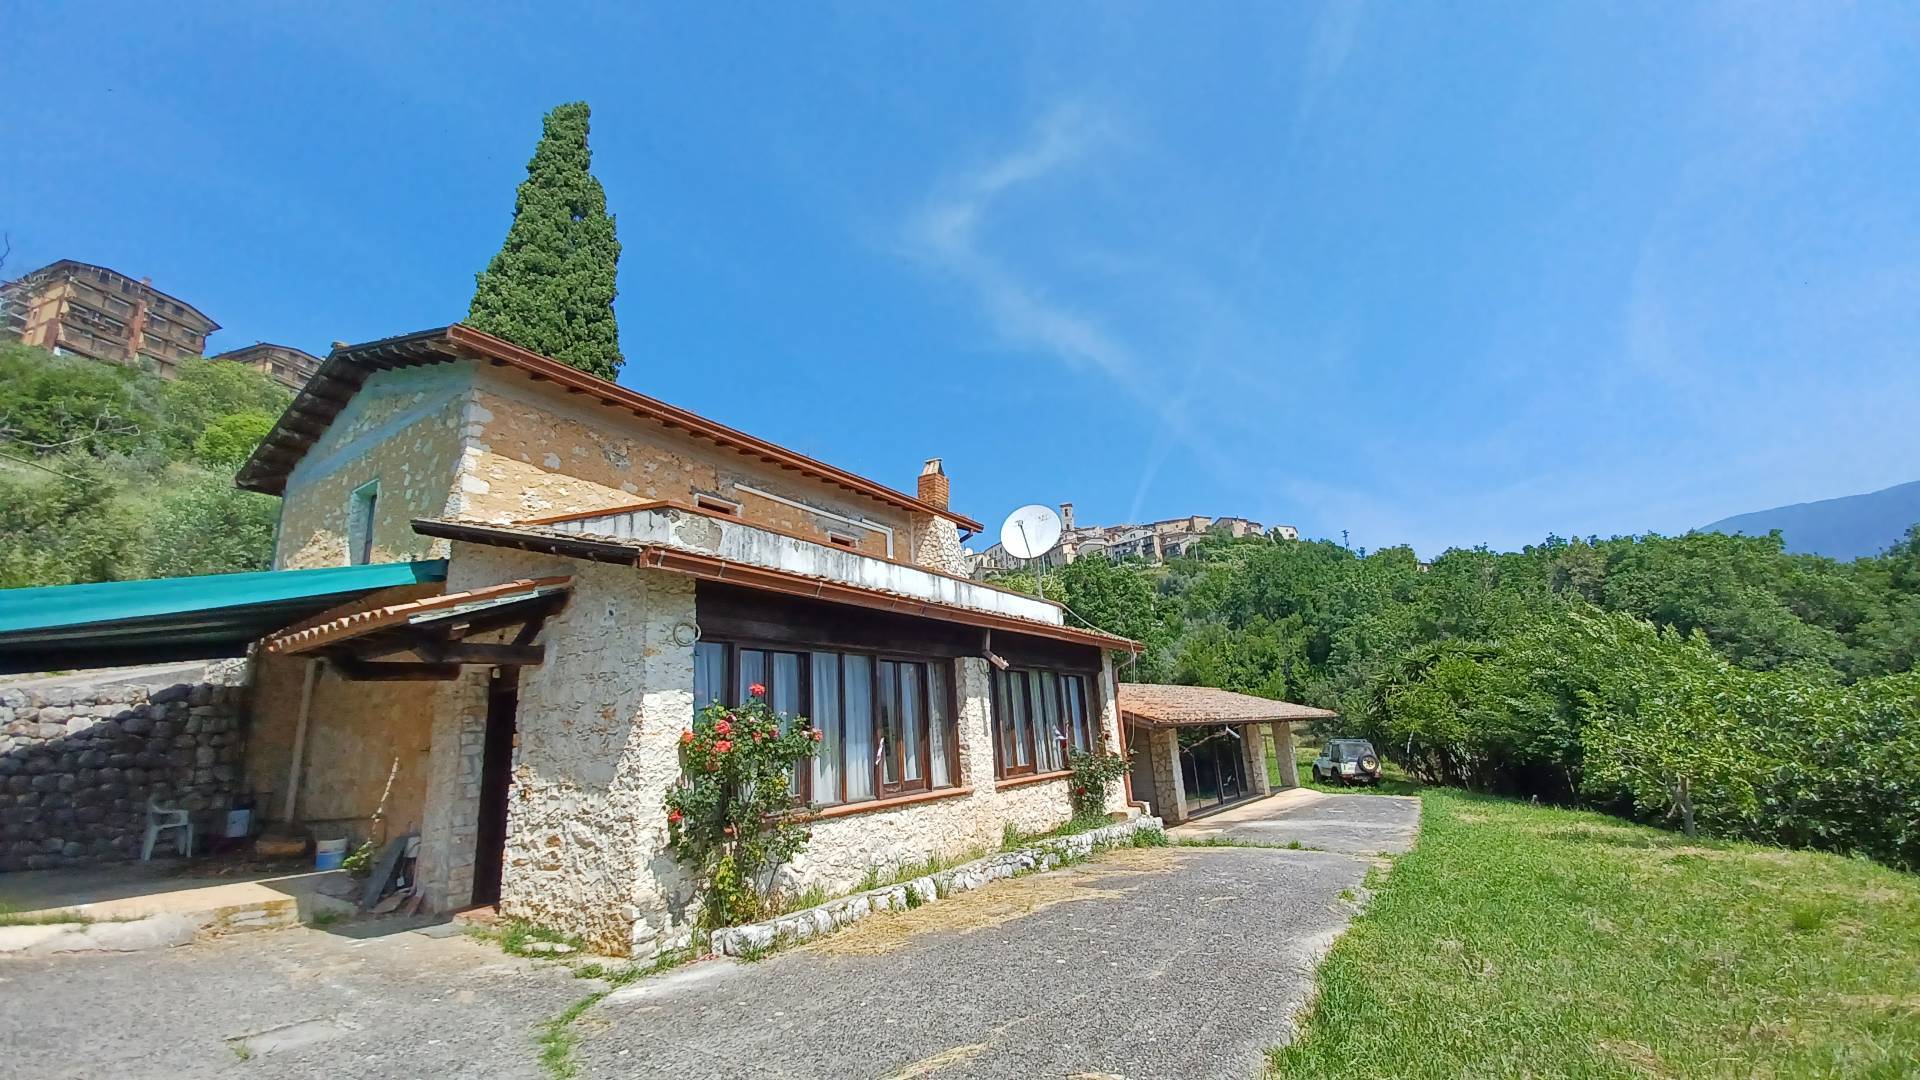 Villa in vendita a Prossedi, 5 locali, prezzo € 149.000 | CambioCasa.it